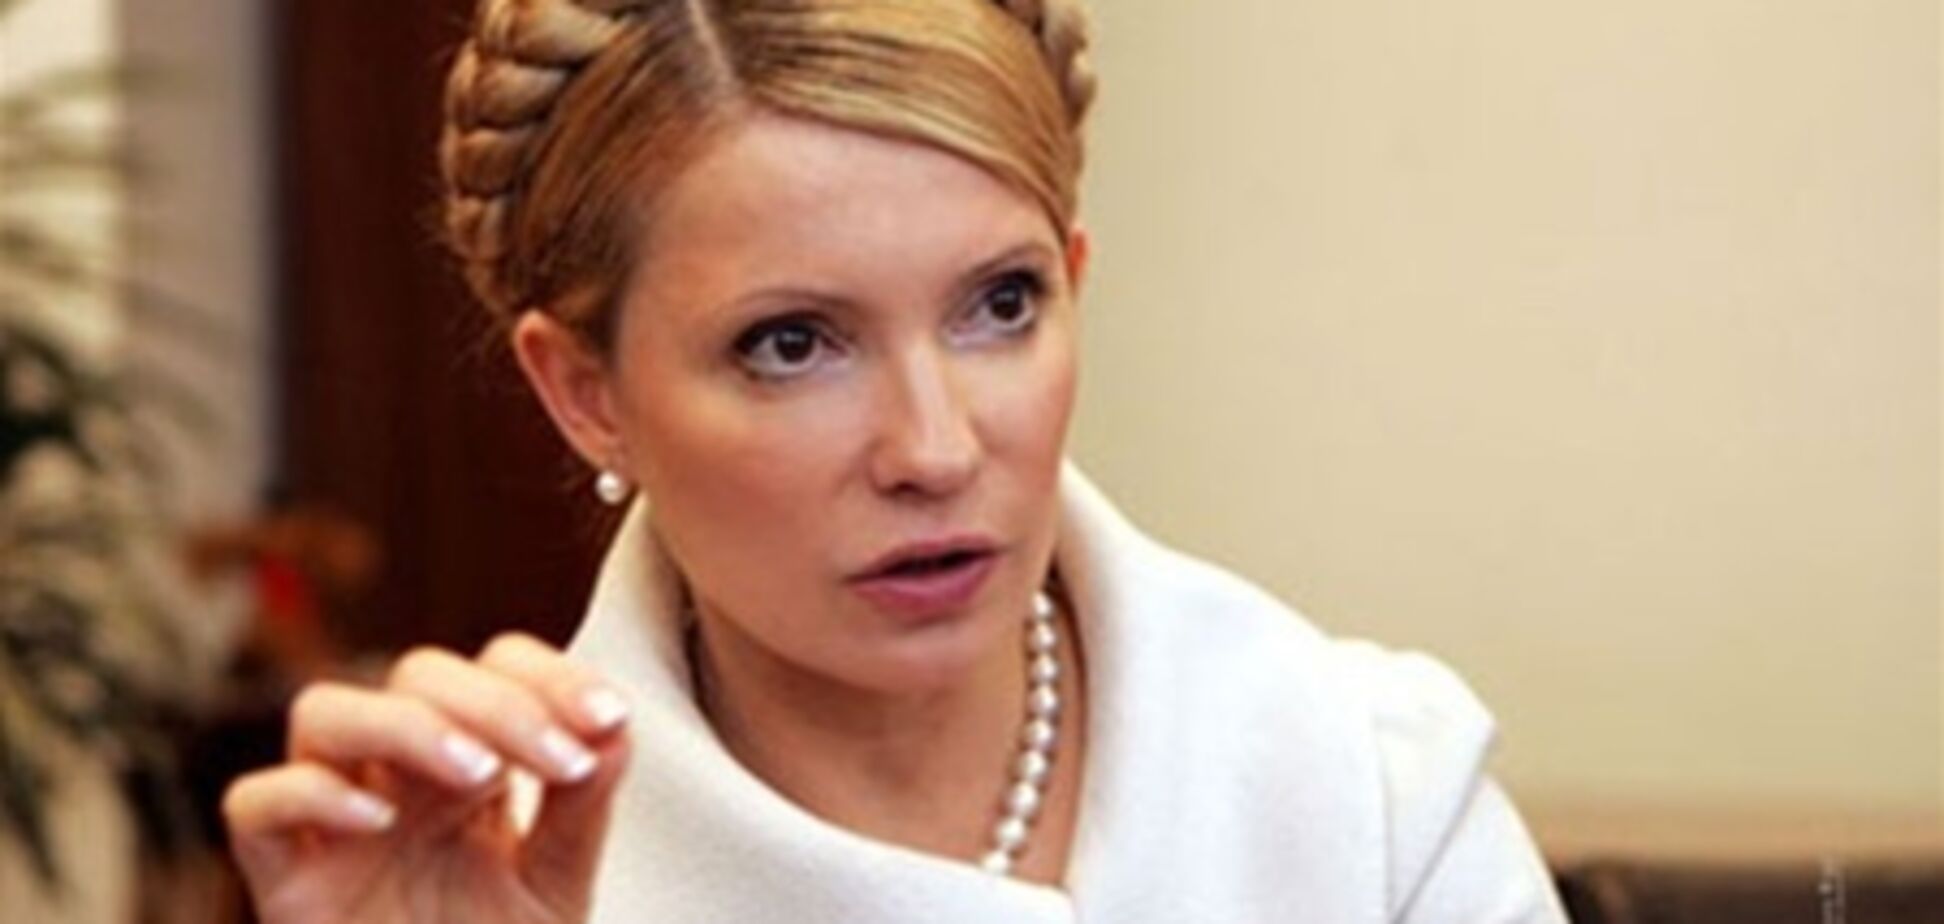 Тимошенко была причастна к заказному убийству? Документы